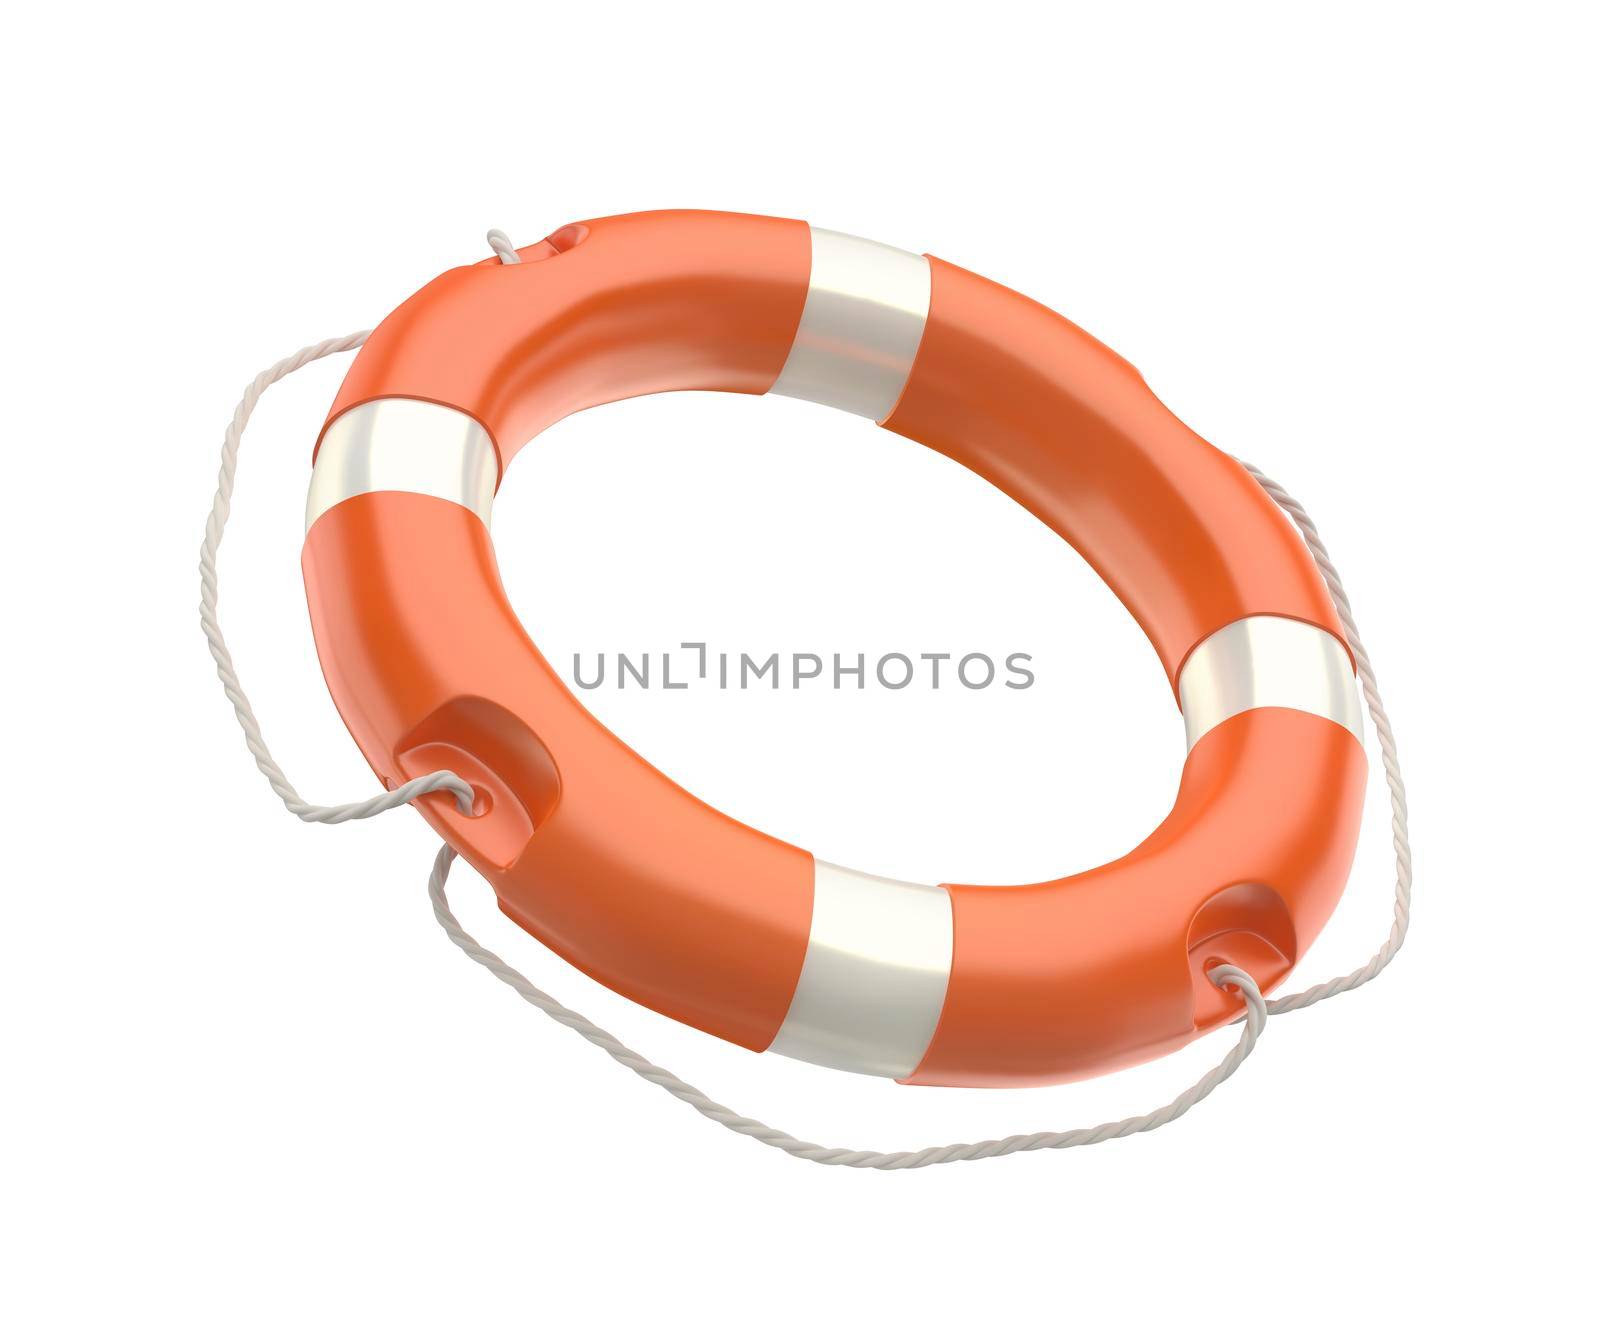 Lifebuoy ring isolated on white background